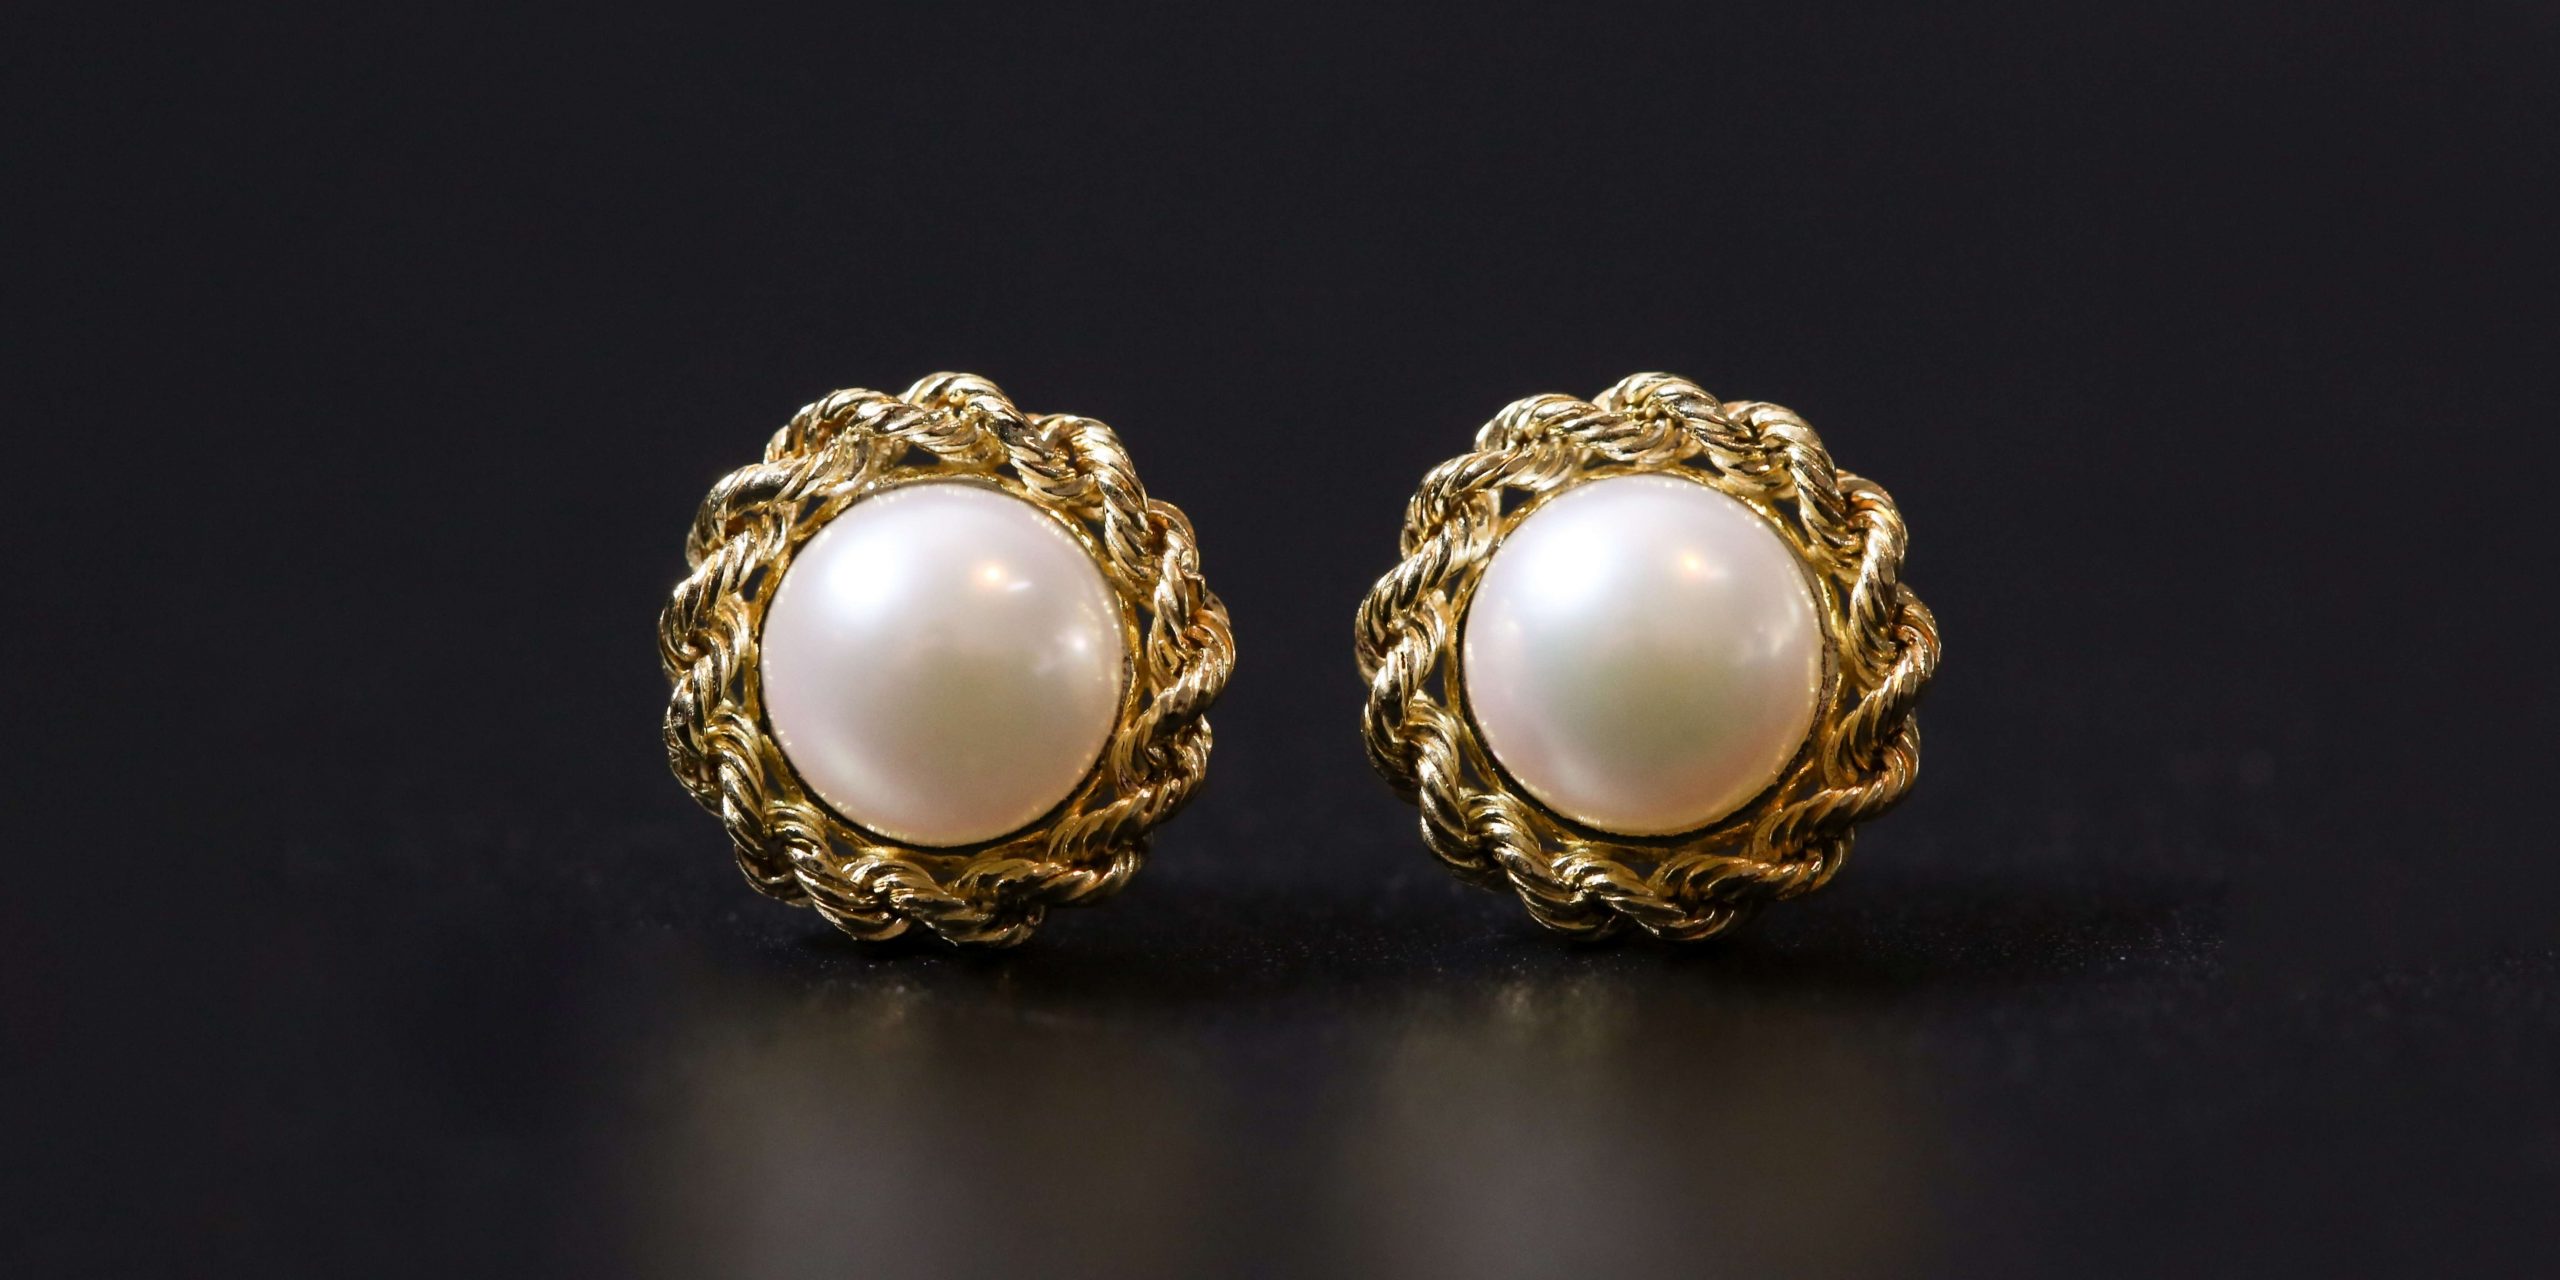 Jewelry Lovers – Small Earrings